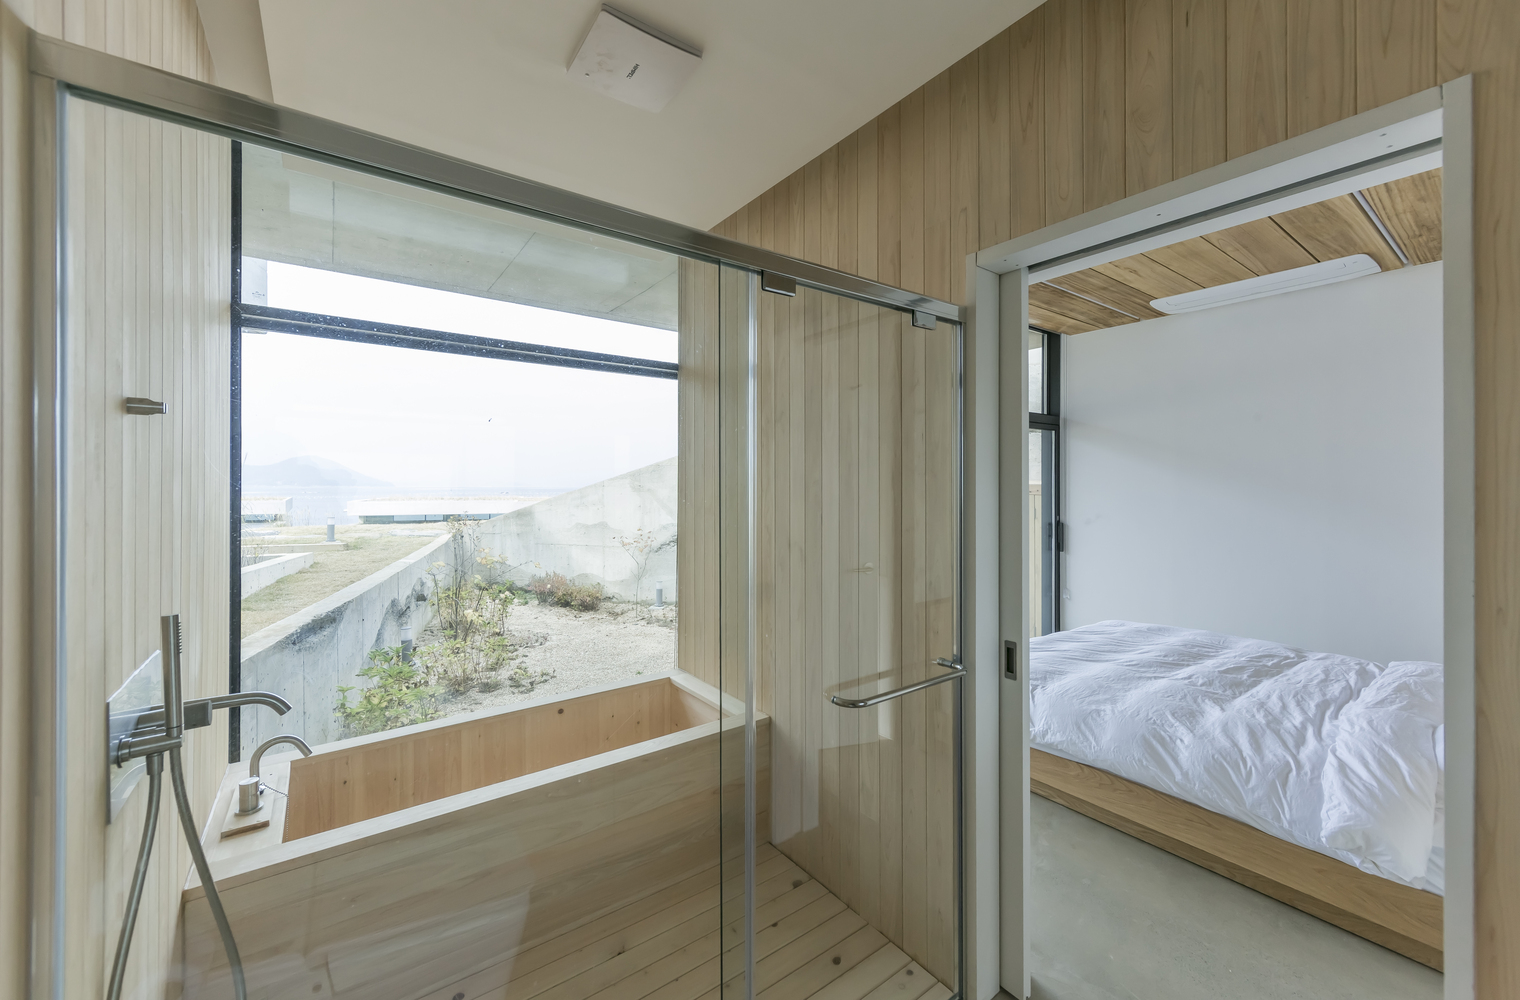 Hình ảnh toàn cảnh phòng ngủ có vệ sinh khép kín trong nhà nghỉ dưỡng